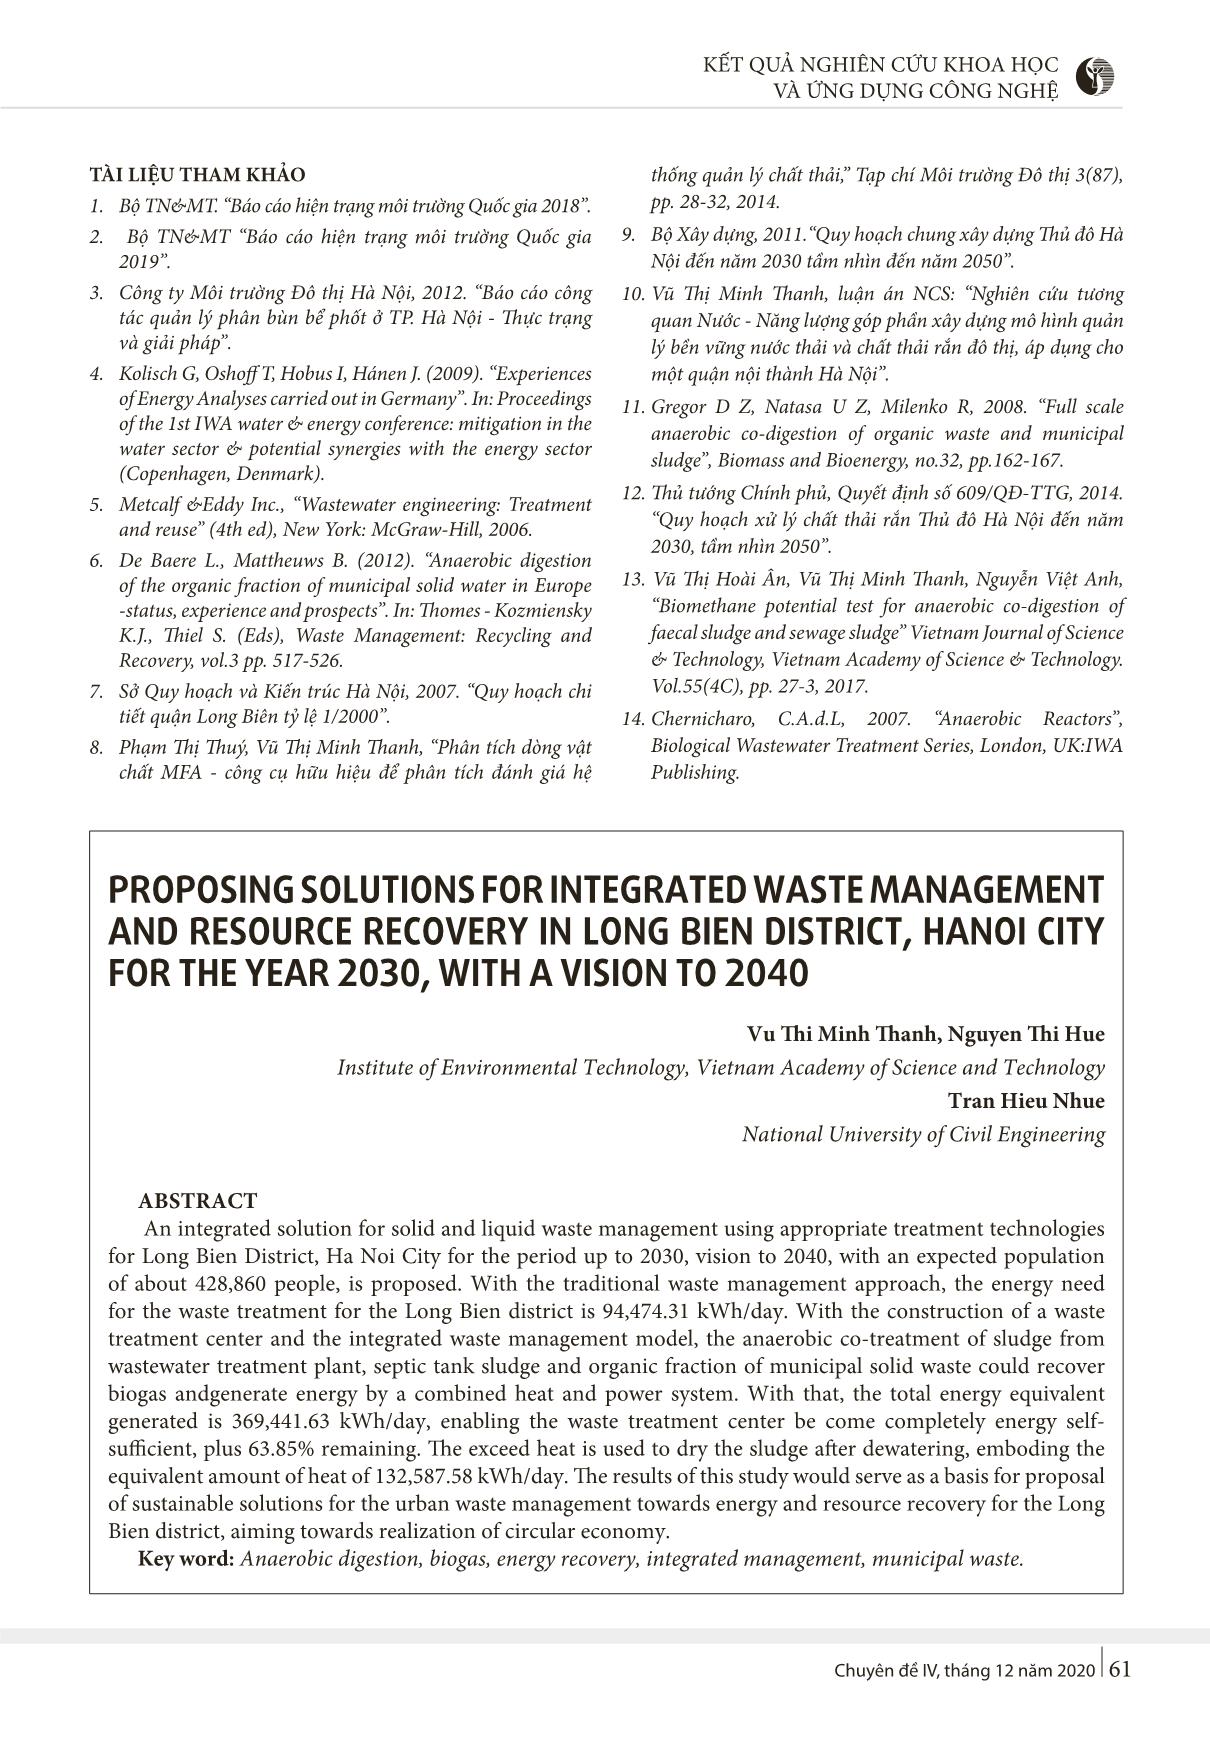 Kiến nghị giải pháp quản lý tổng hợp chất thải, thu hồi tài nguyên tại quận Long Biên, thành phố Hà Nội đến năm 2030, tầm nhìn đến năm 2040 trang 5